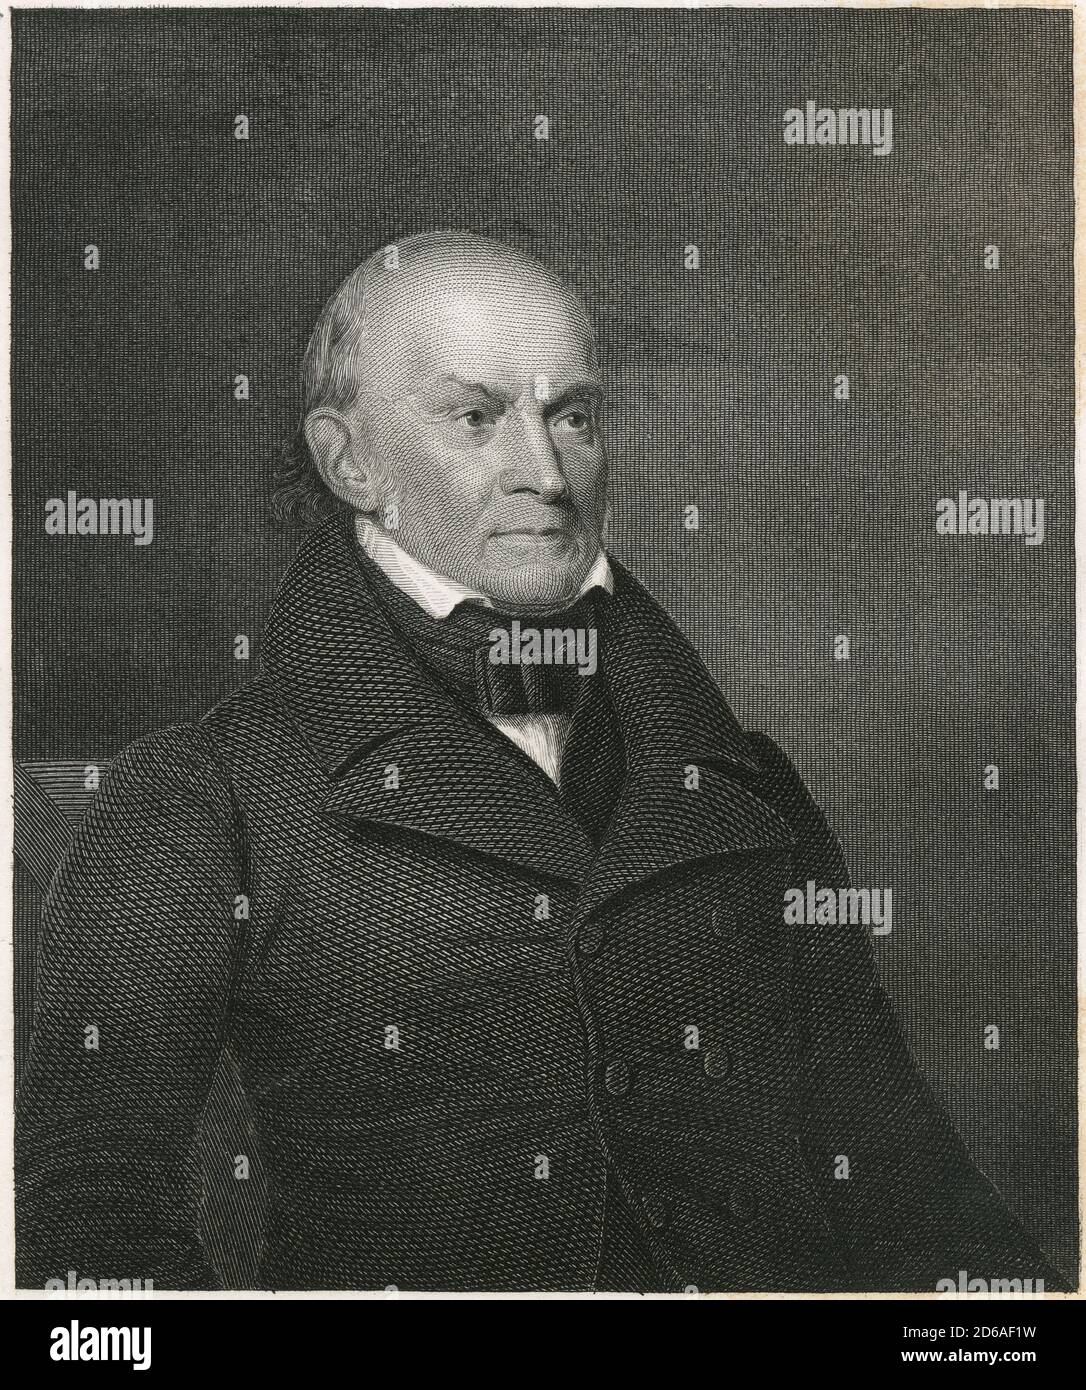 Incisione antica c1870, John Quincy Adams. John Quincy Adams (1767-1848) è stato uno statista, diplomatico, avvocato e calendiario americano che è stato il sesto presidente degli Stati Uniti, dal 1825 al 1829. FONTE: INCISIONE ORIGINALE Foto Stock